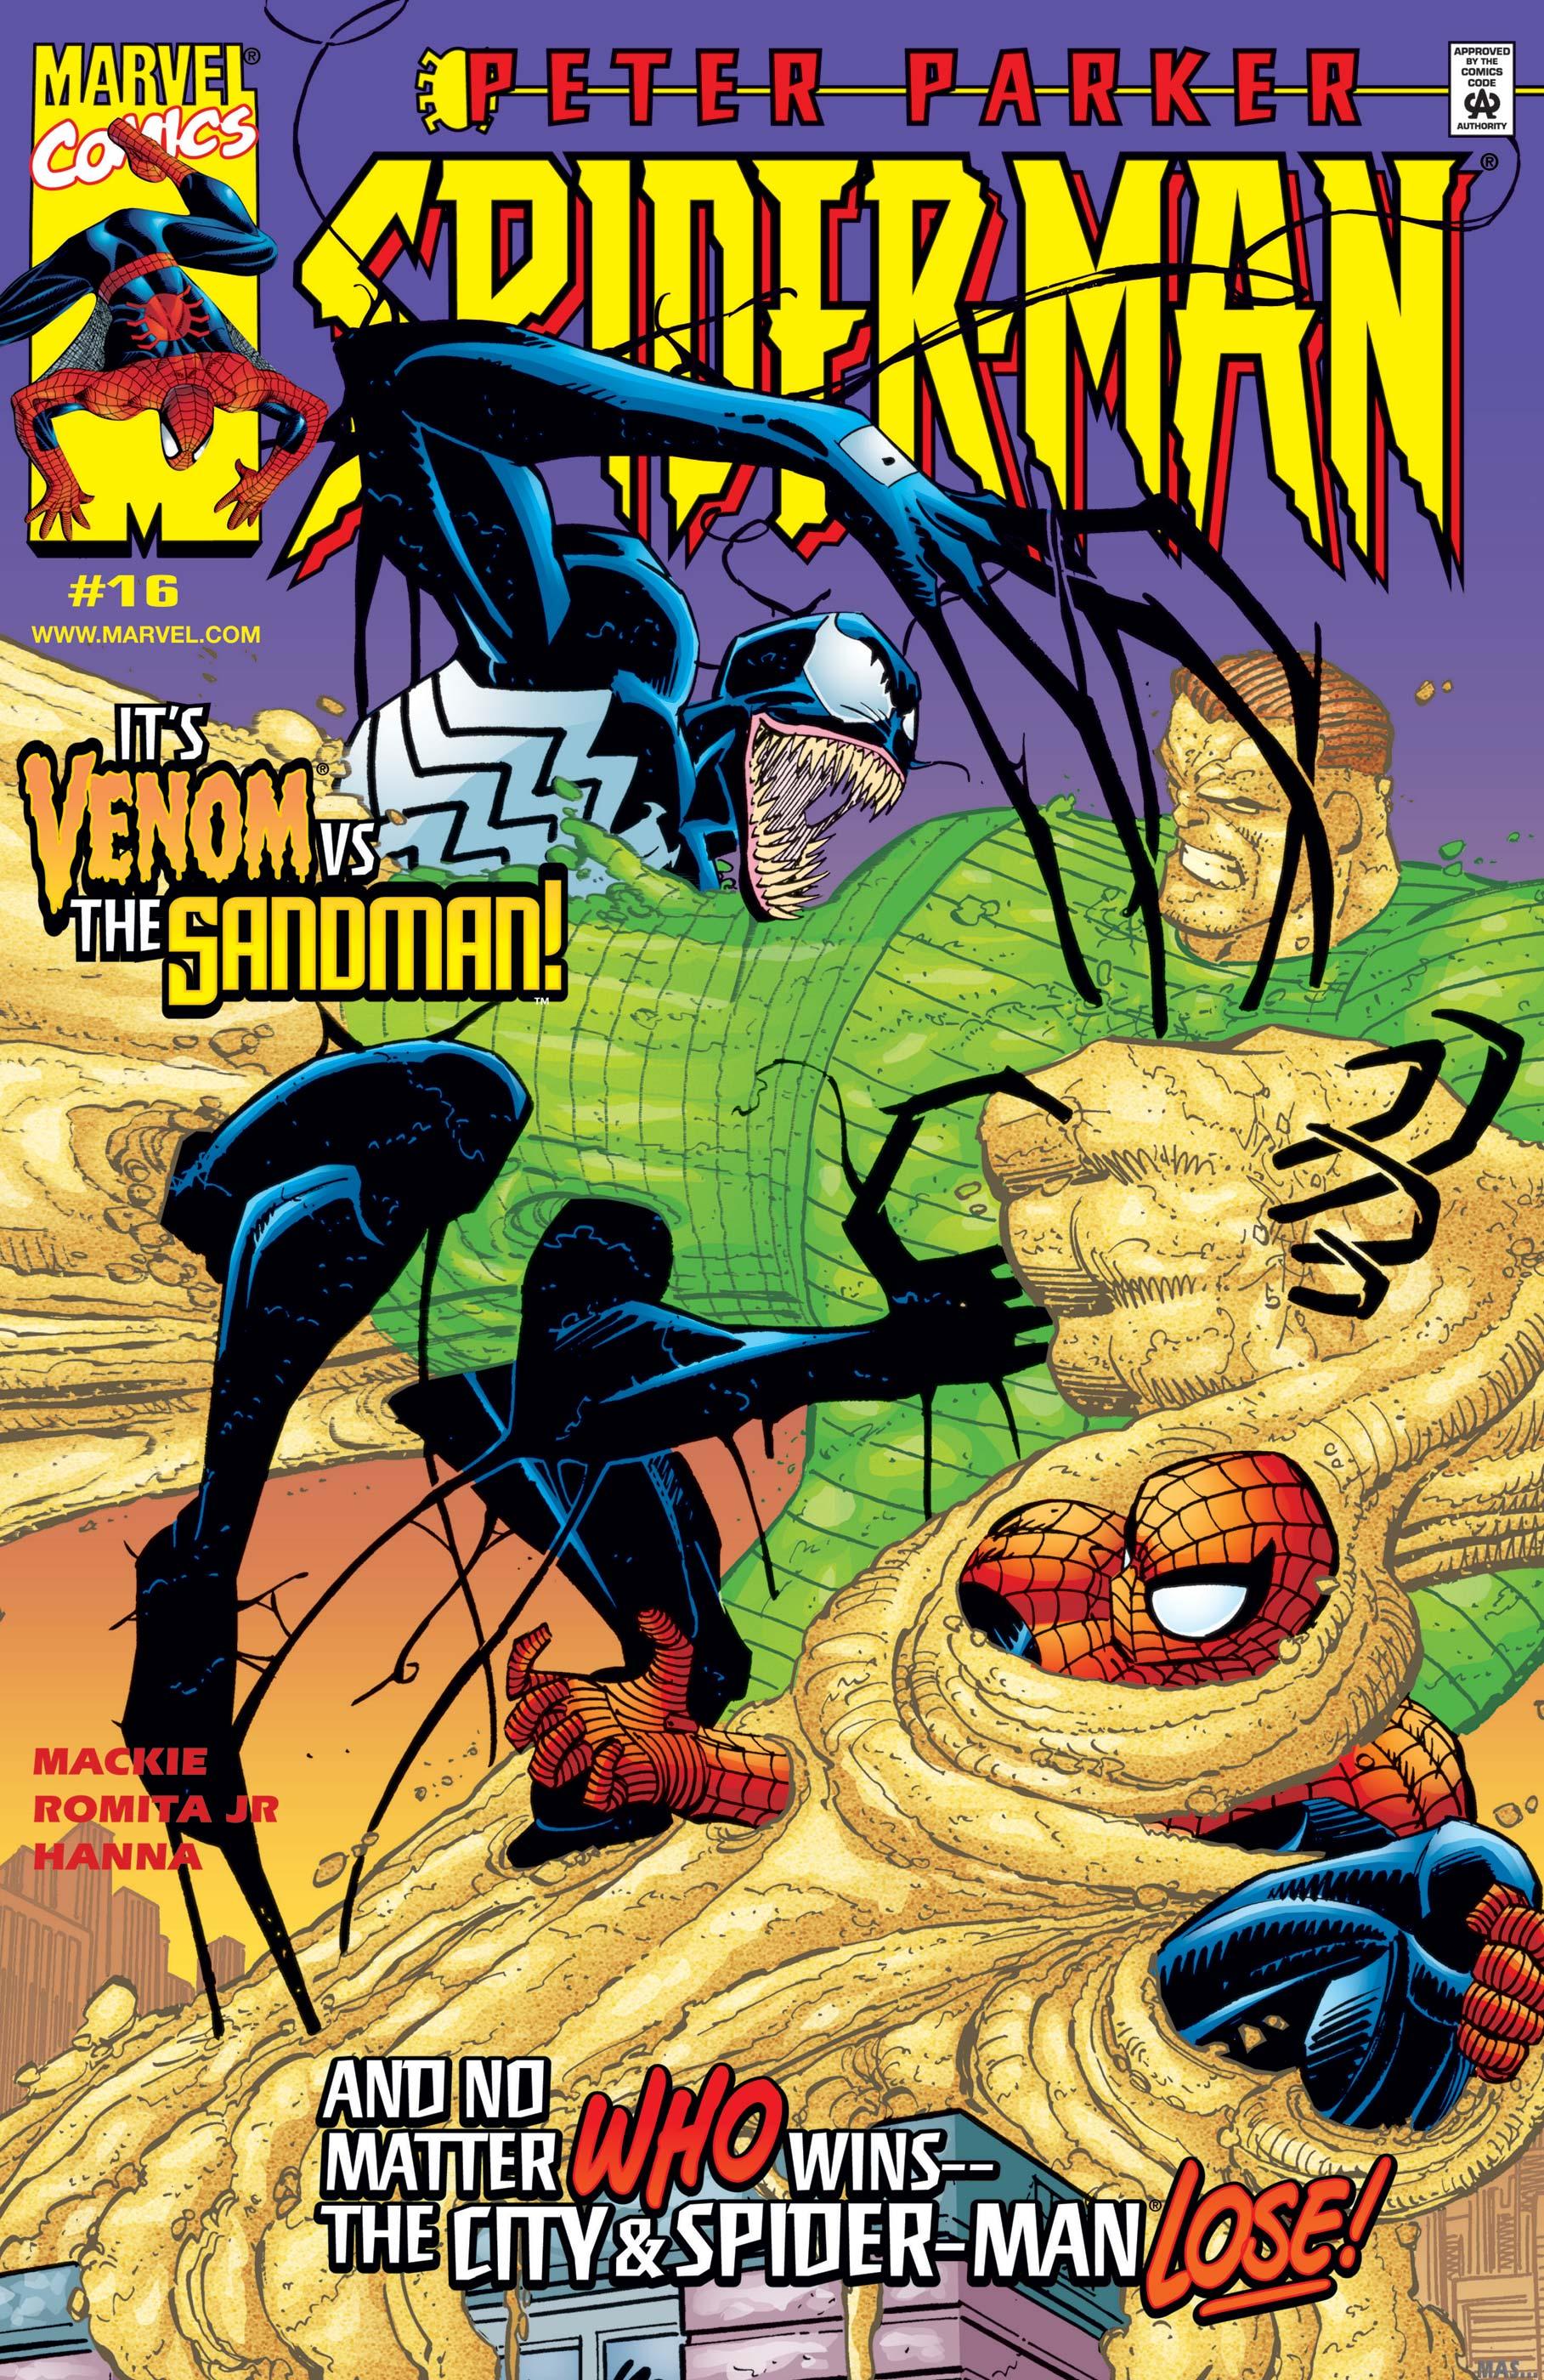 PETER PARKER SPIDER-MAN #16#18#19 - MARVEL COMICS (2000)